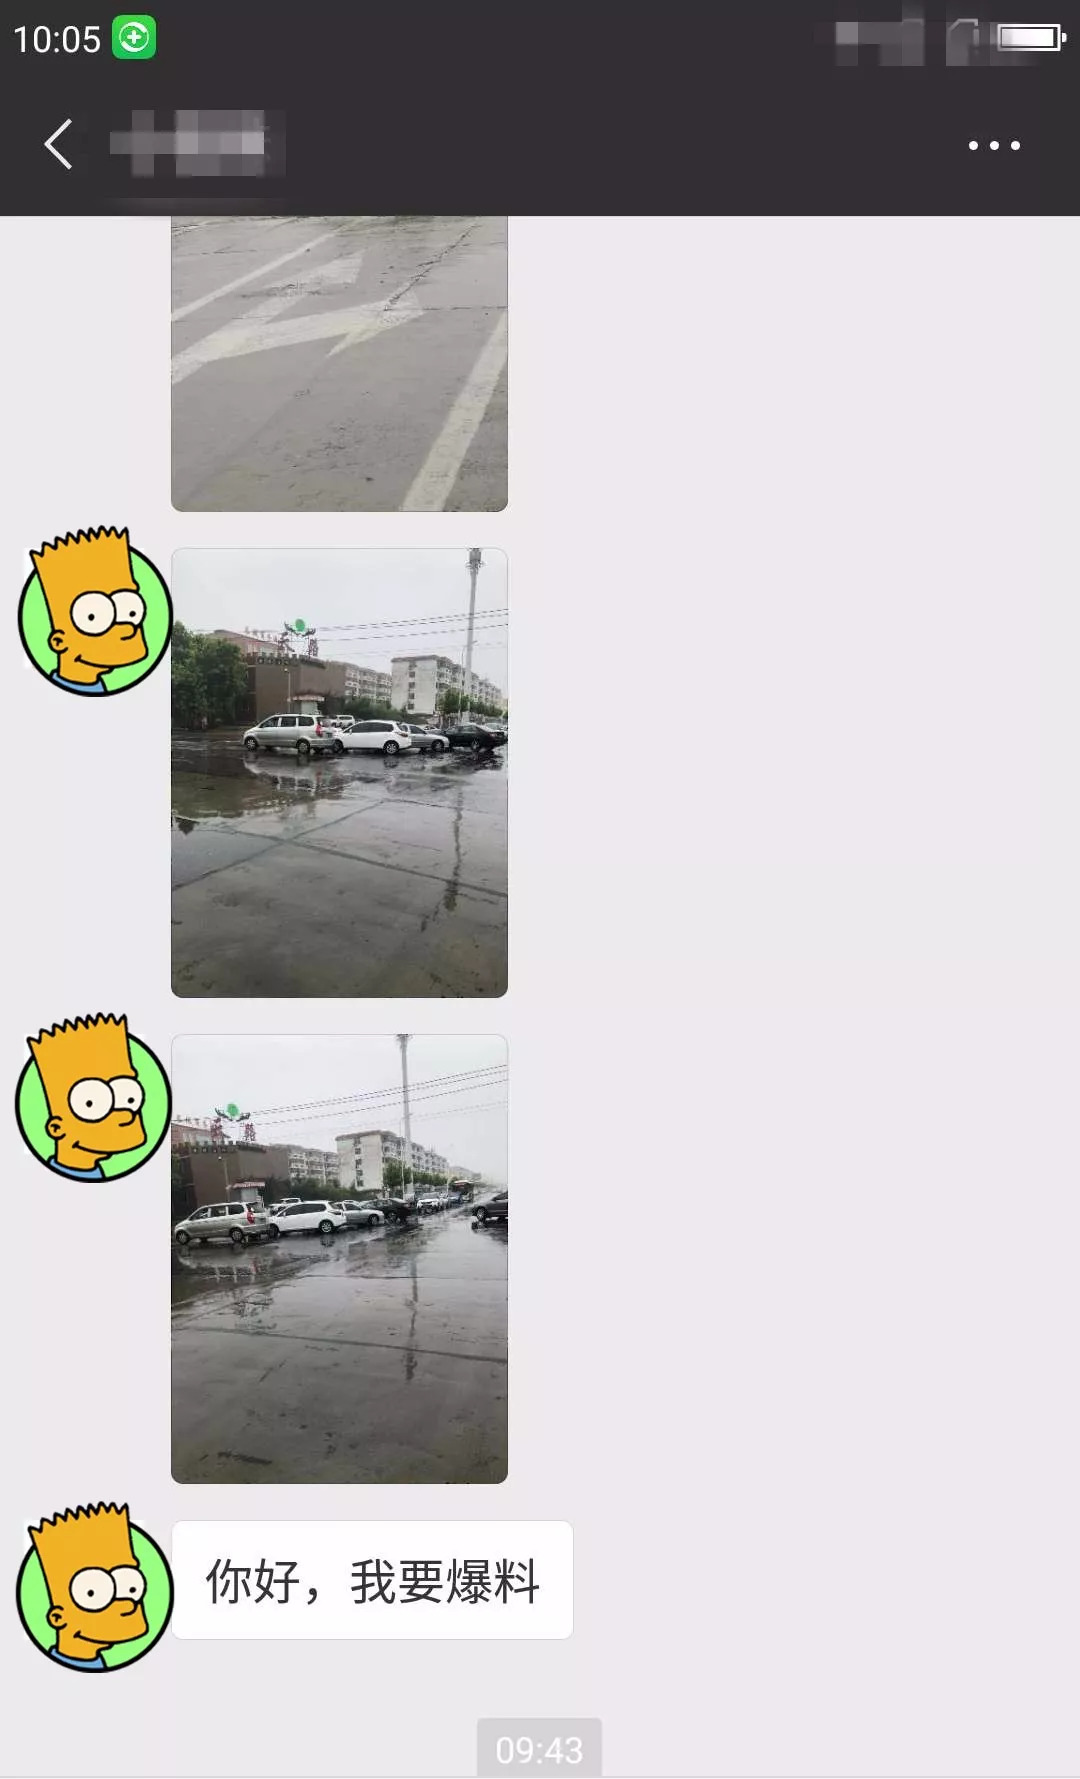 雨天路滑要小心！今早鹤壁这个路口突发多车相撞！不过万幸…